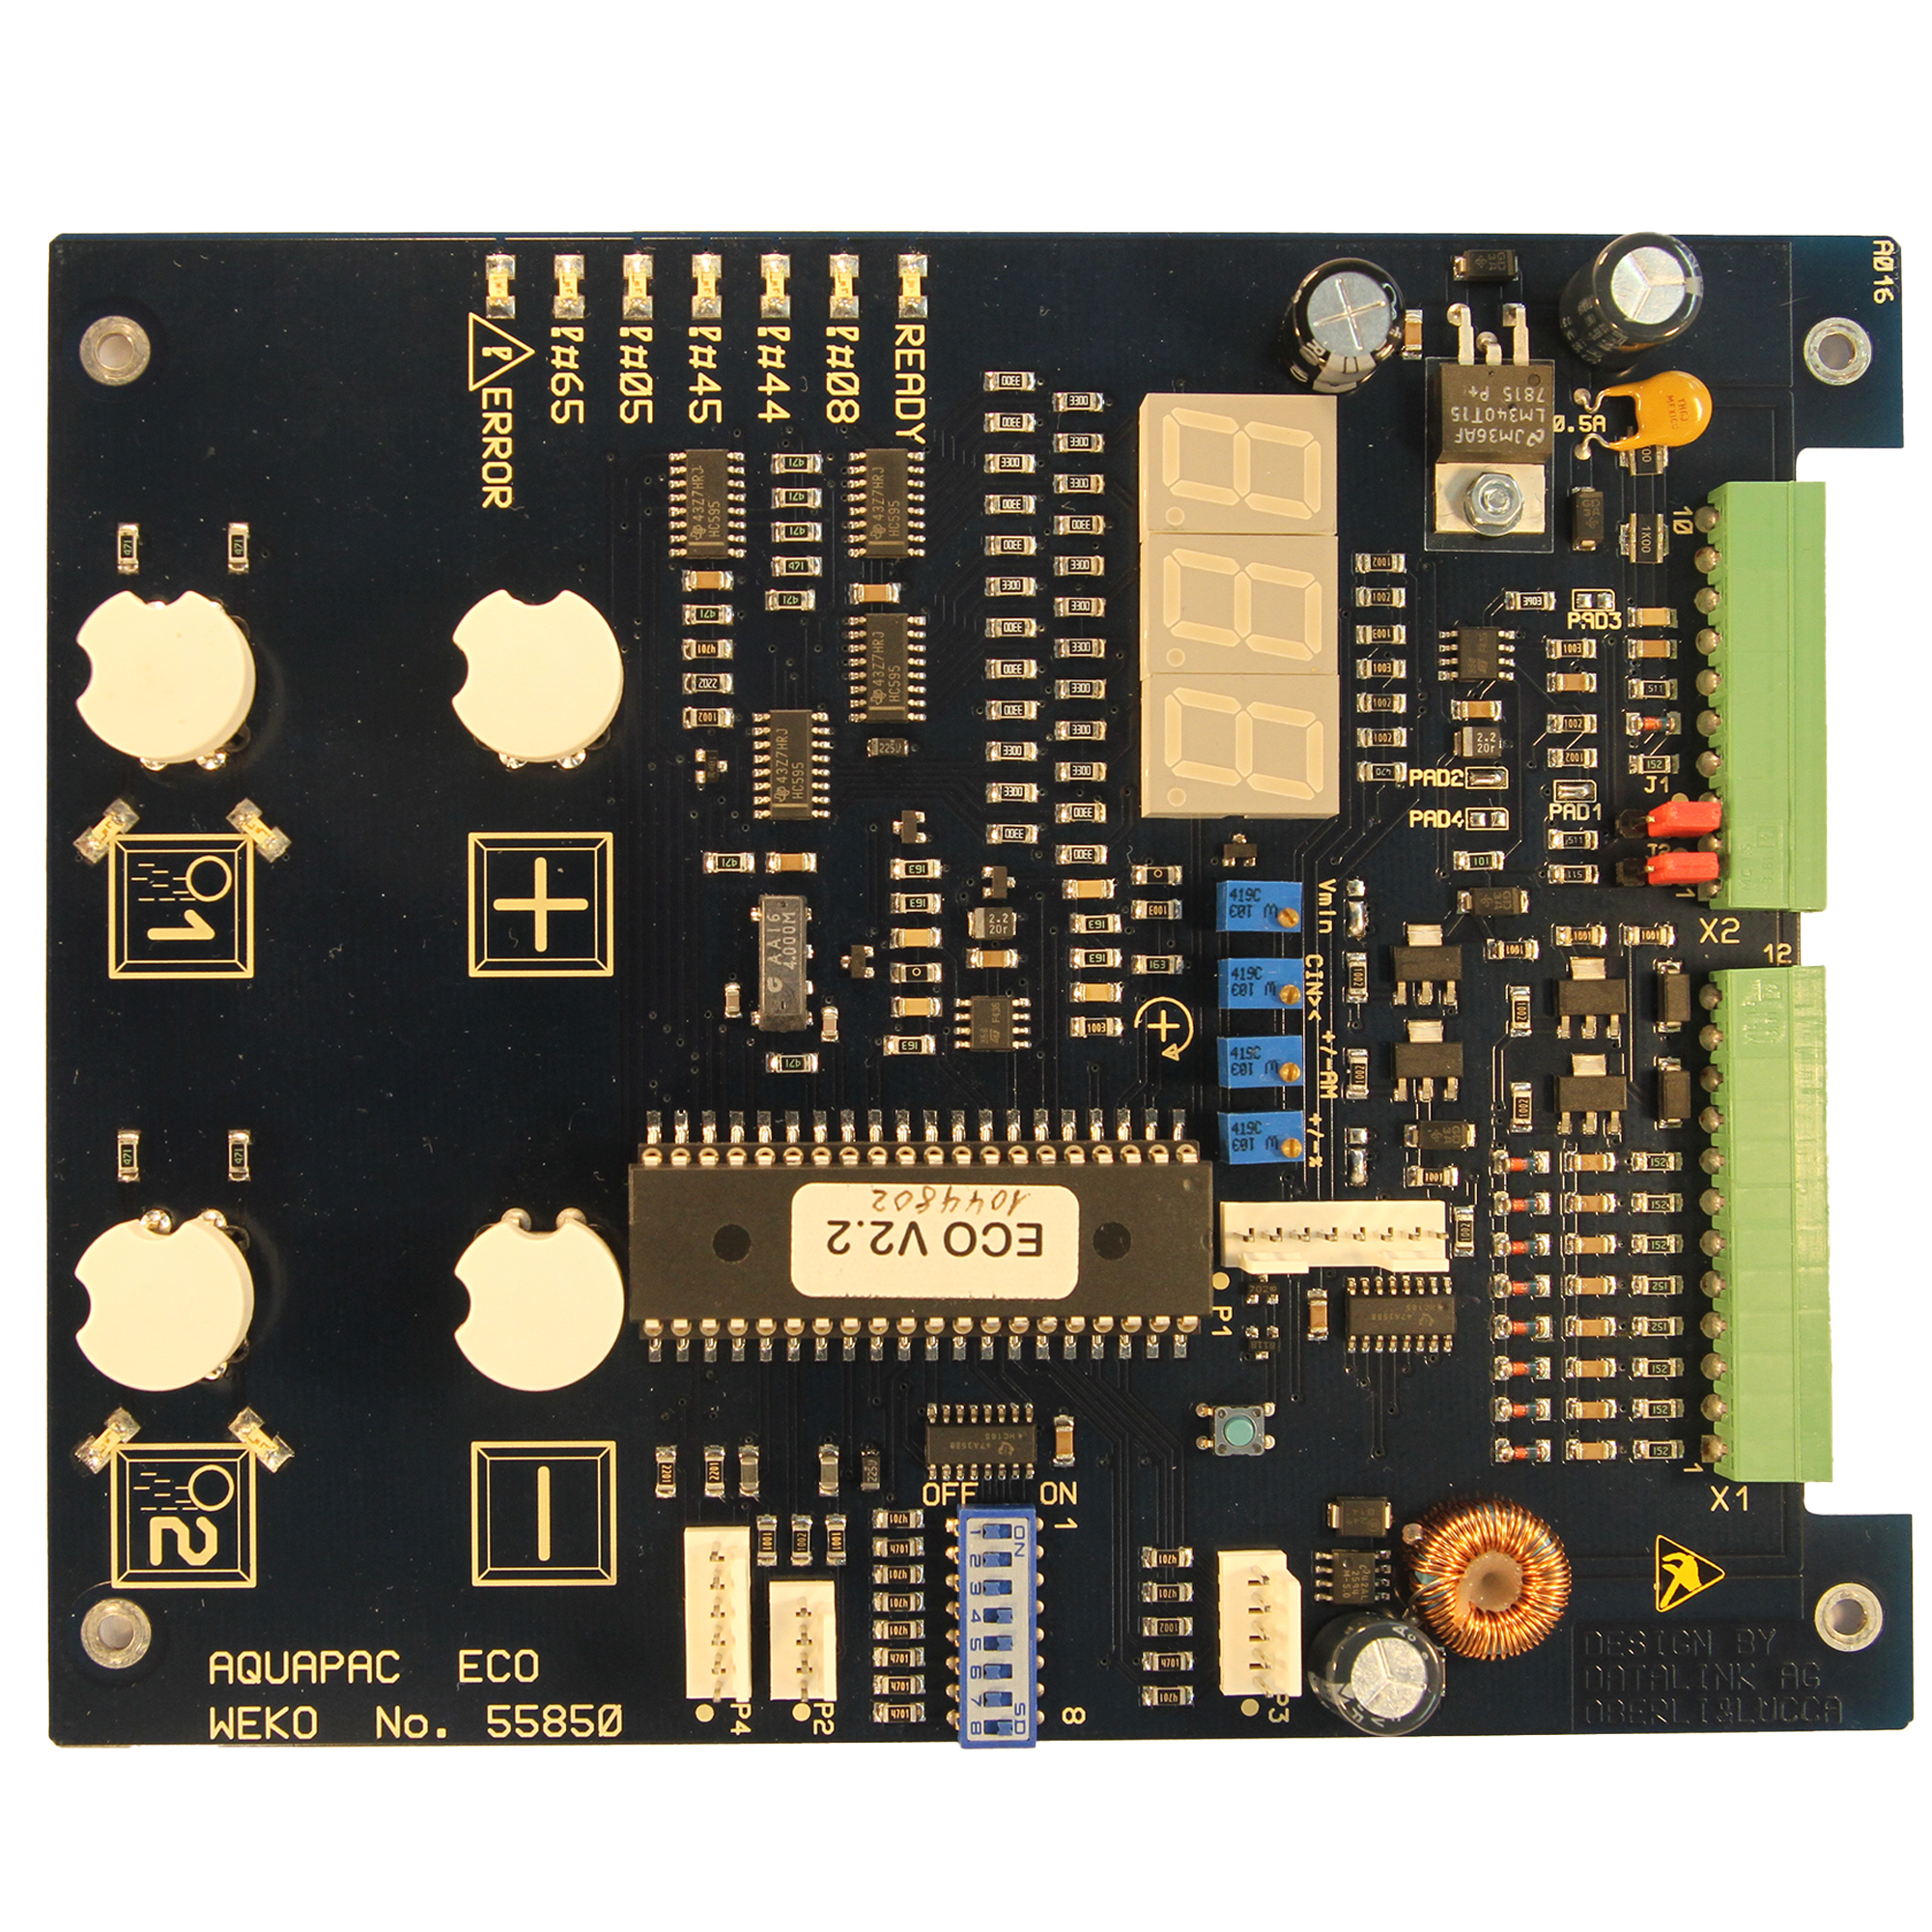 Microcontroler PLC A016 (ex. Aquapac eco)